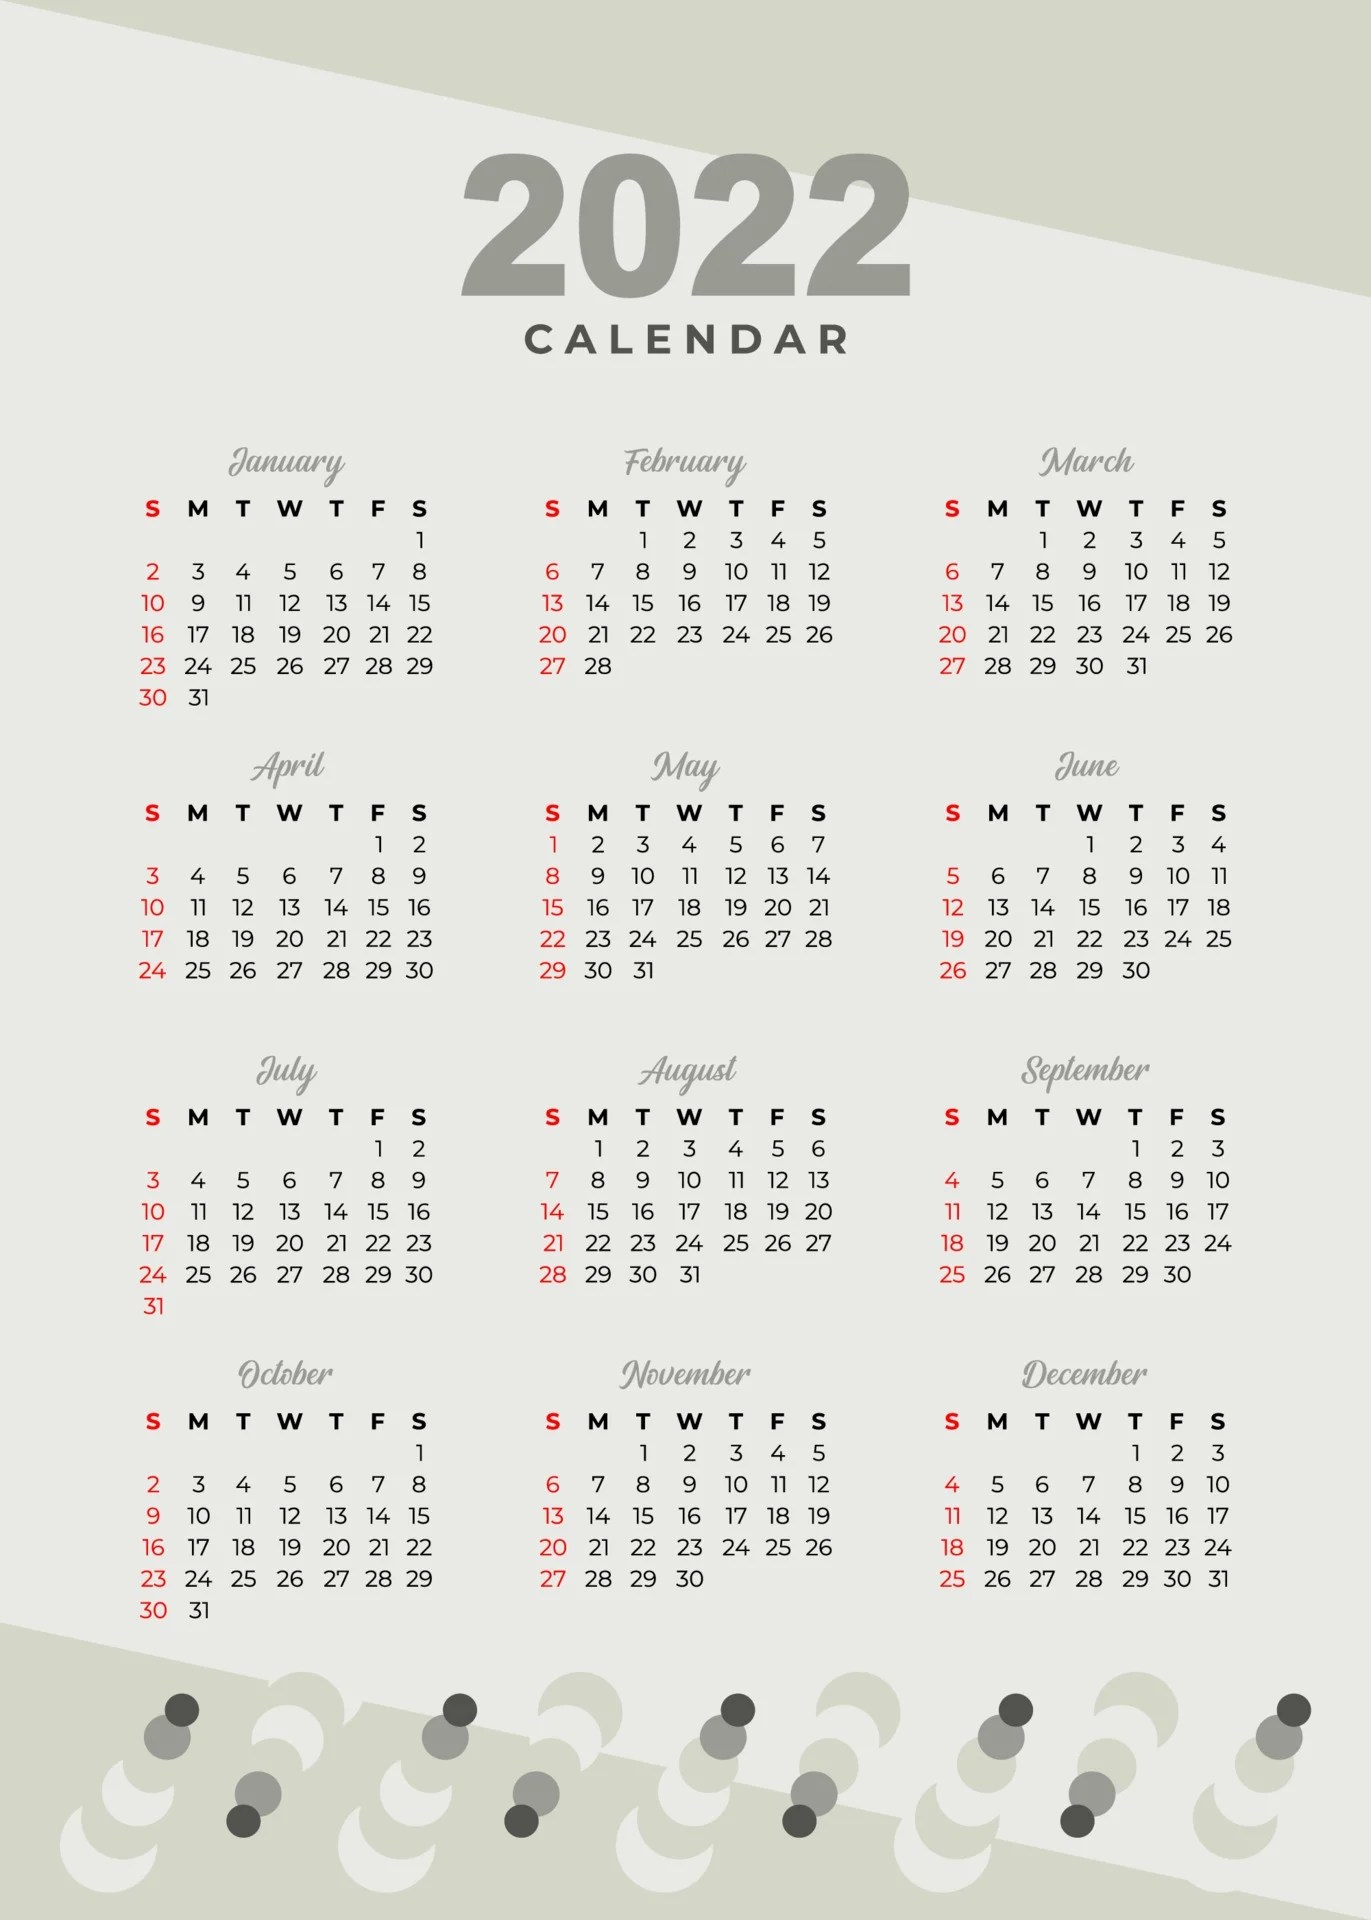 Islamic Calendar April 2022 [Updated Calendar] - Clara